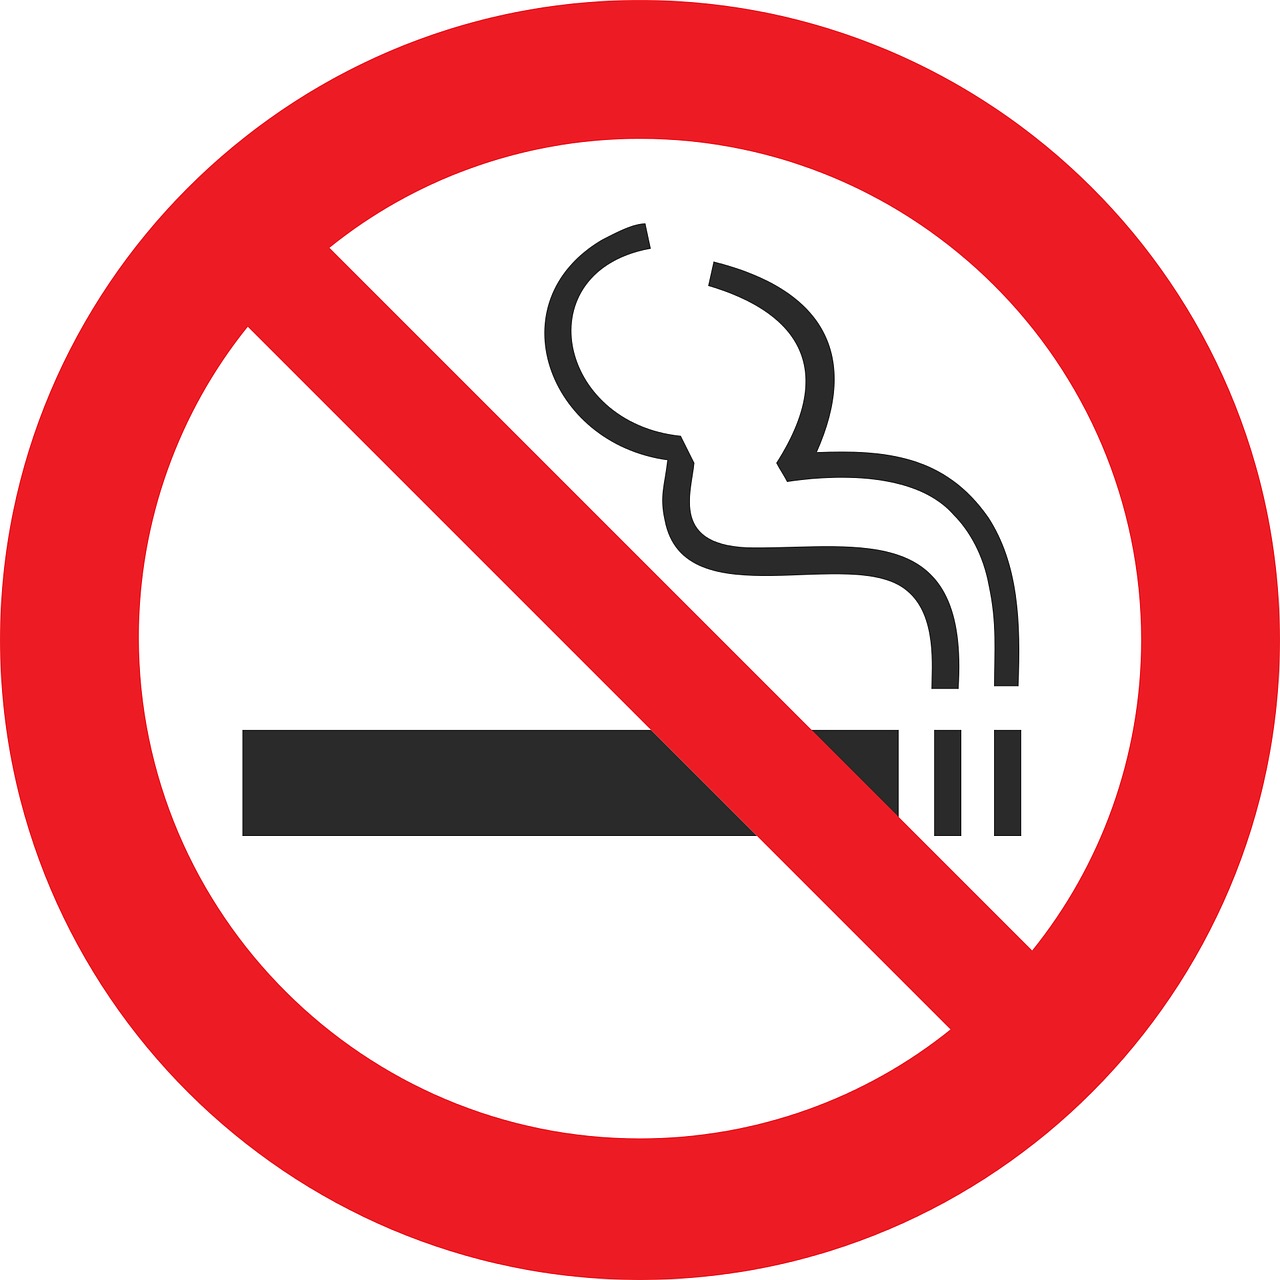 Une même espérance de vie pour les non-fumeurs et les fumeurs ayant arrêté avant 40 ans